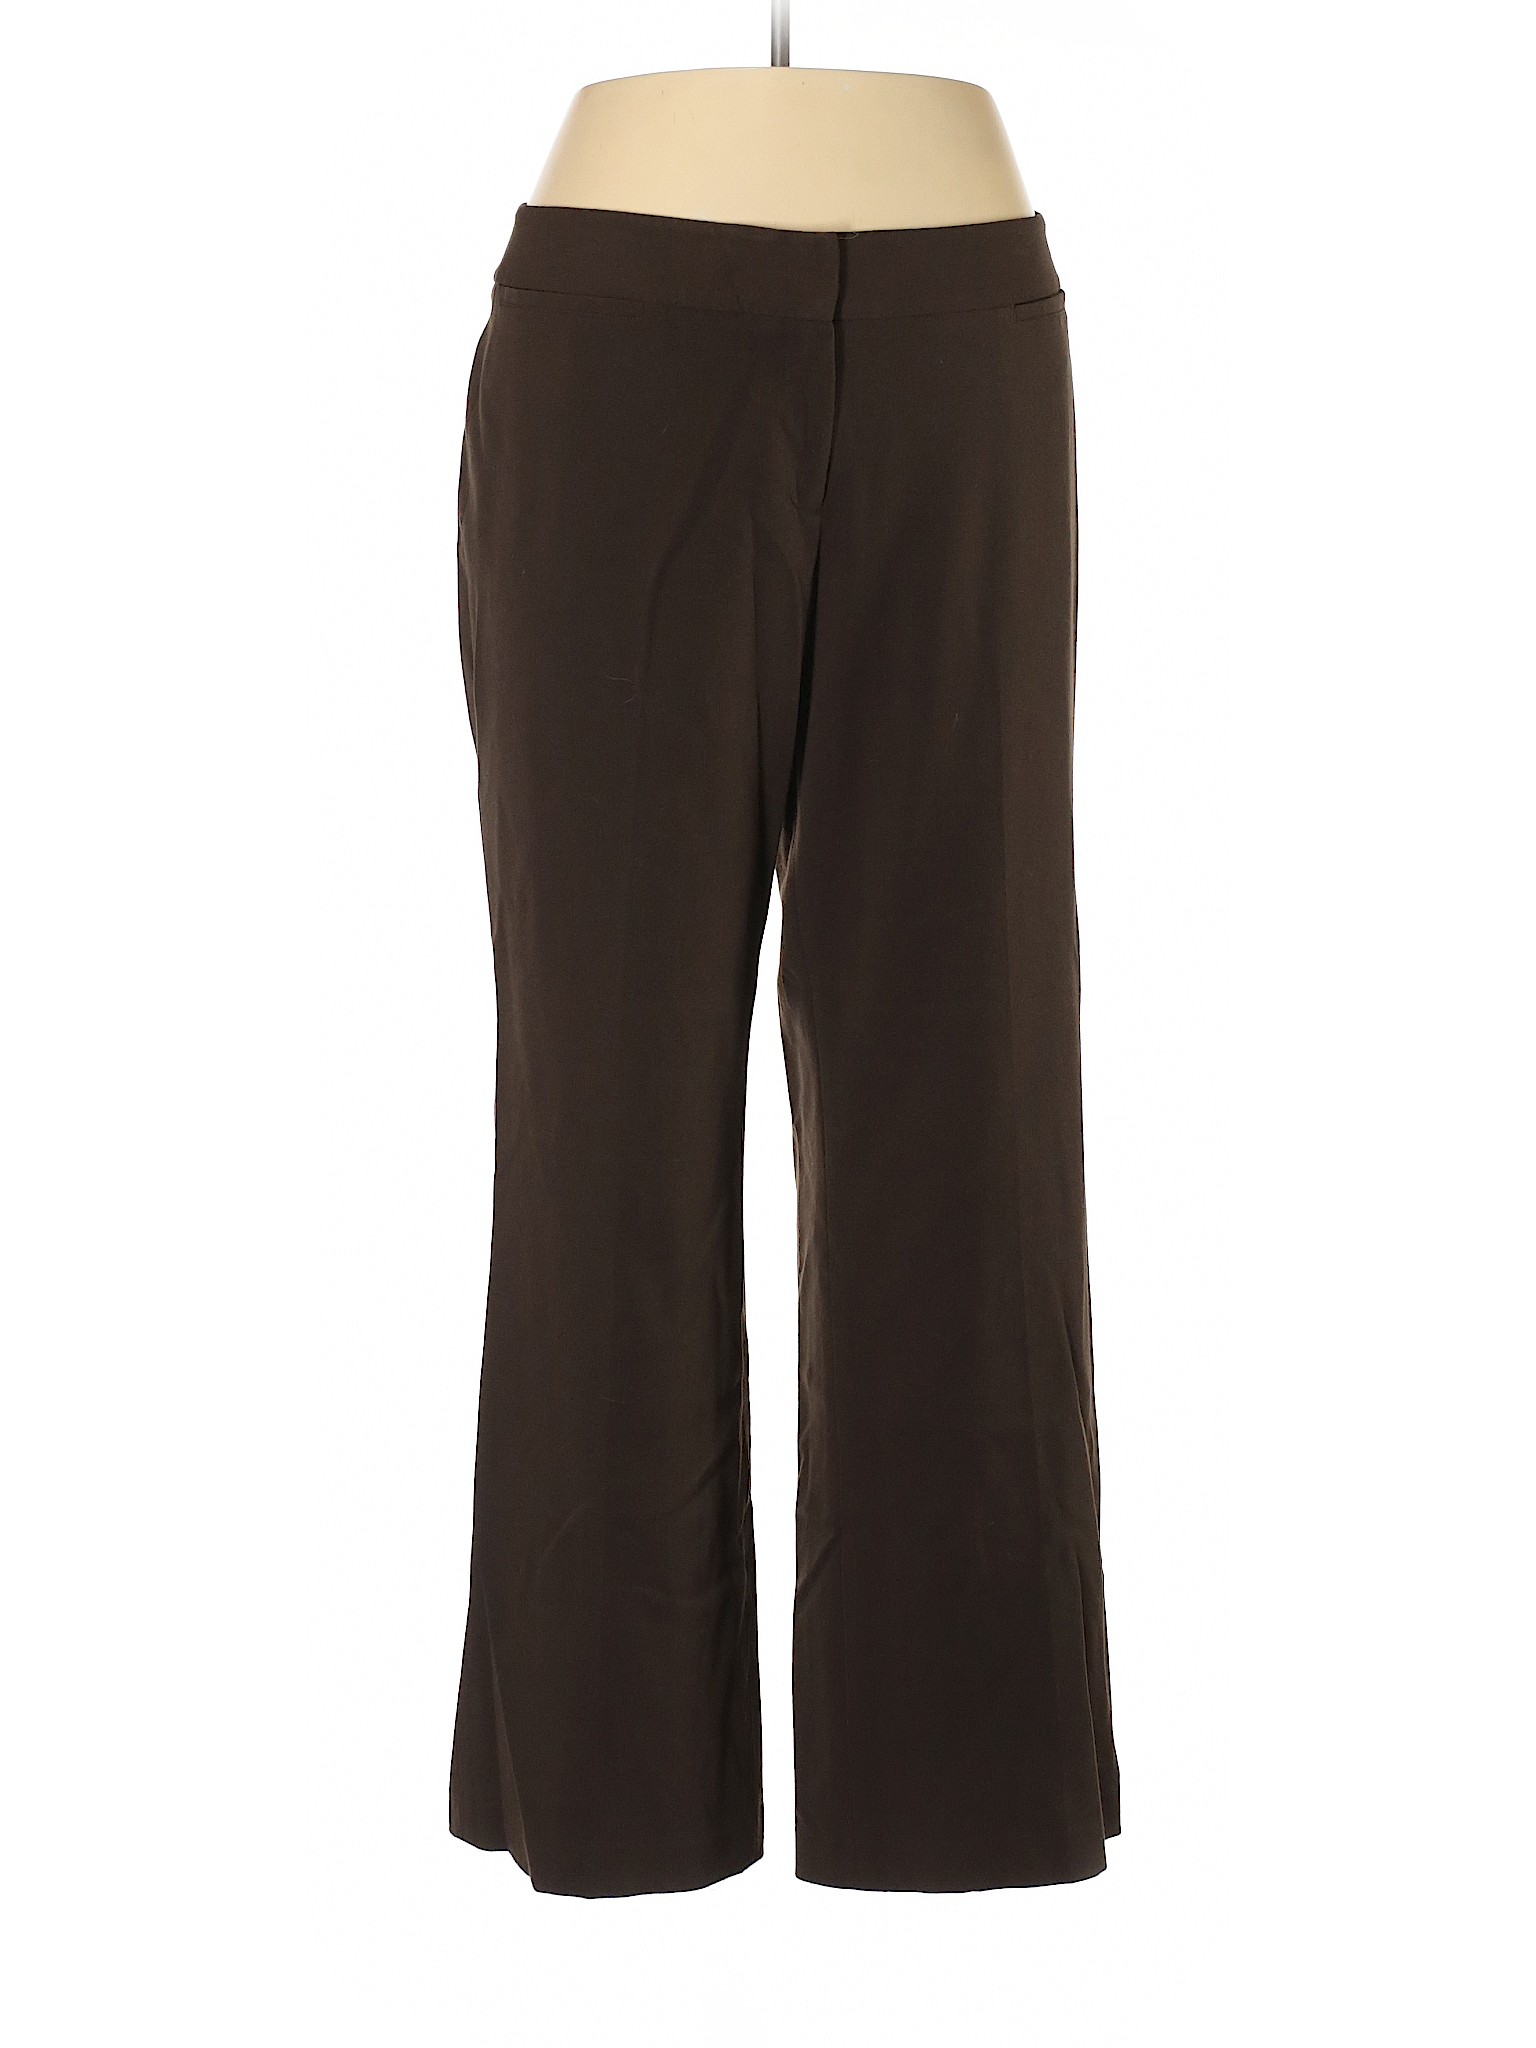 Rafaella Women Brown Dress Pants 16 | eBay